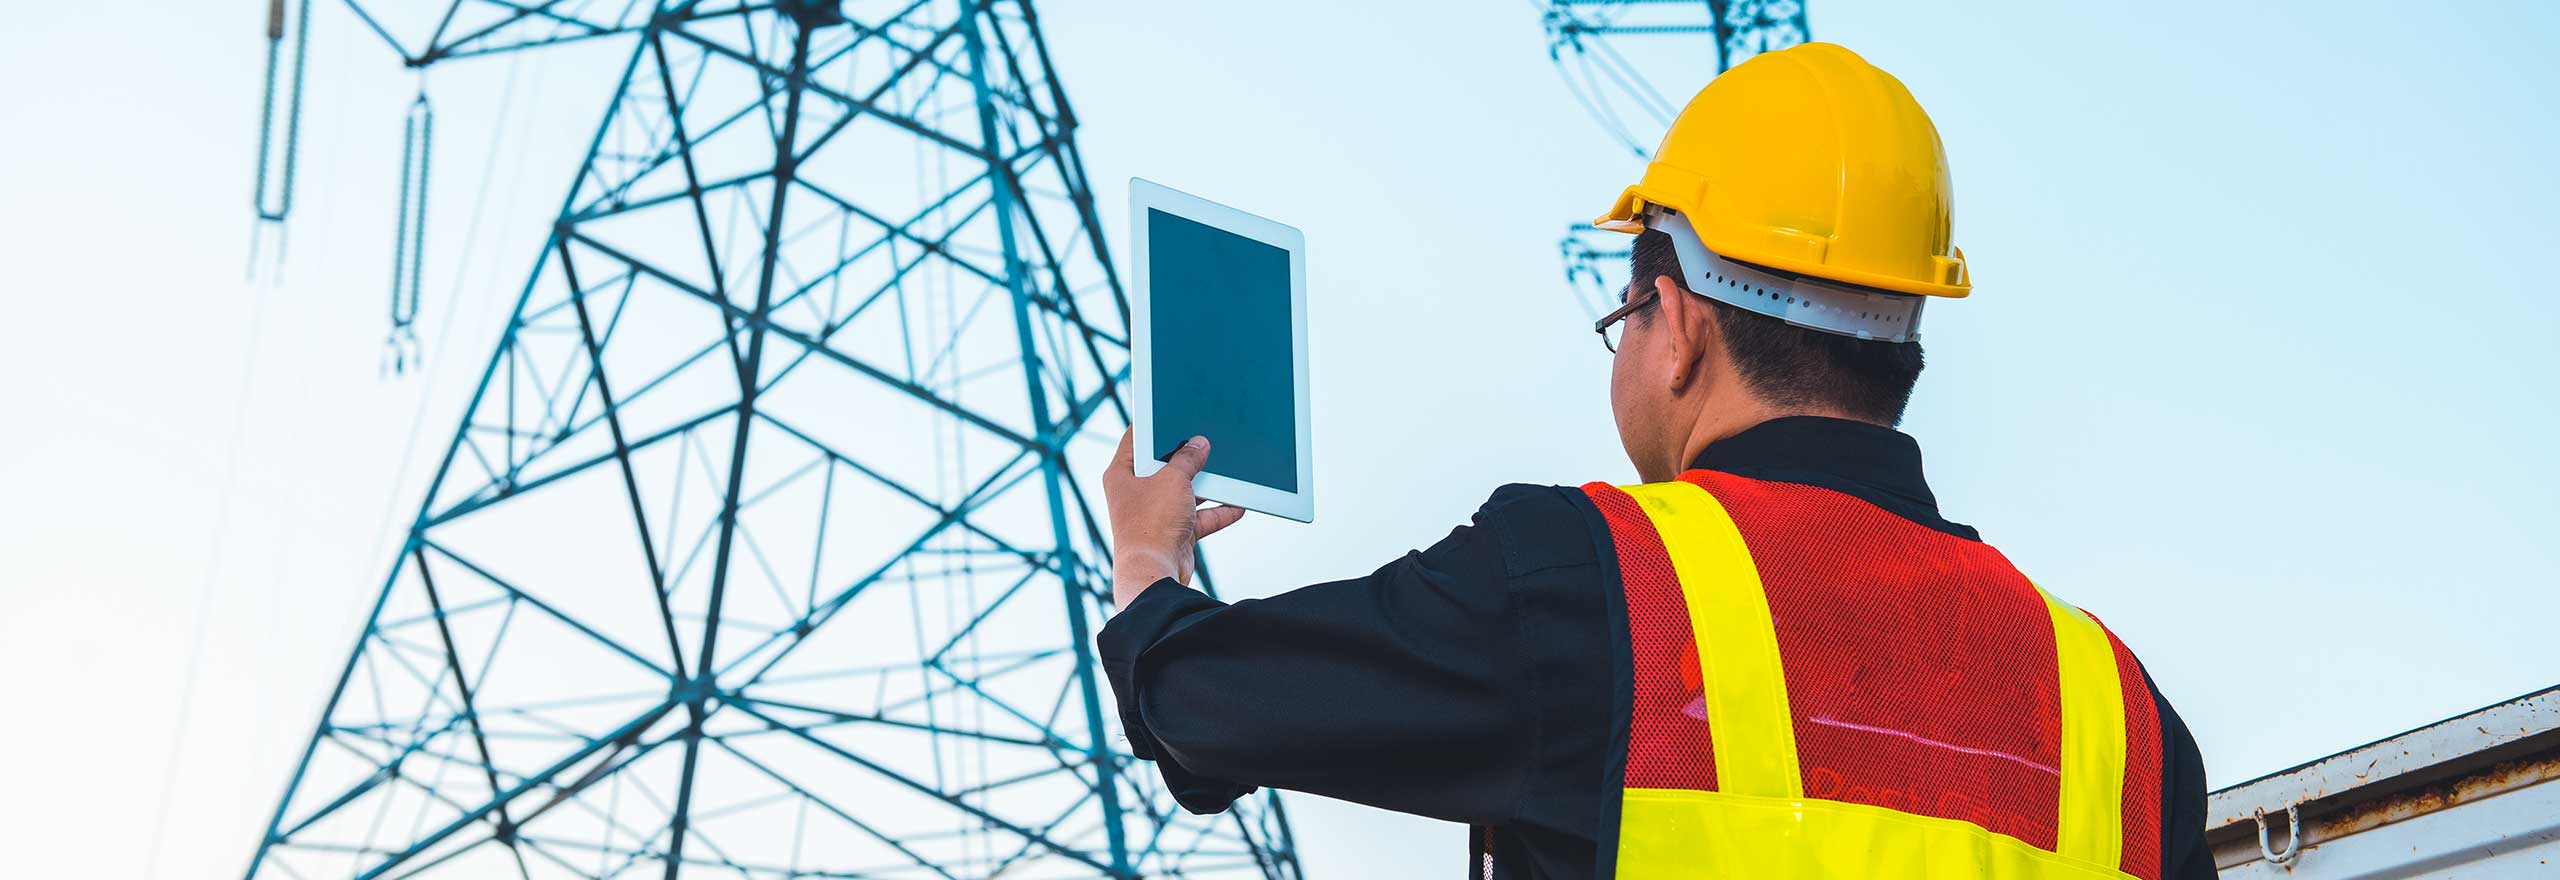 Électricien portant un casque de chantier et tenant une tablette sur un pylône d’alimentation haute tension.